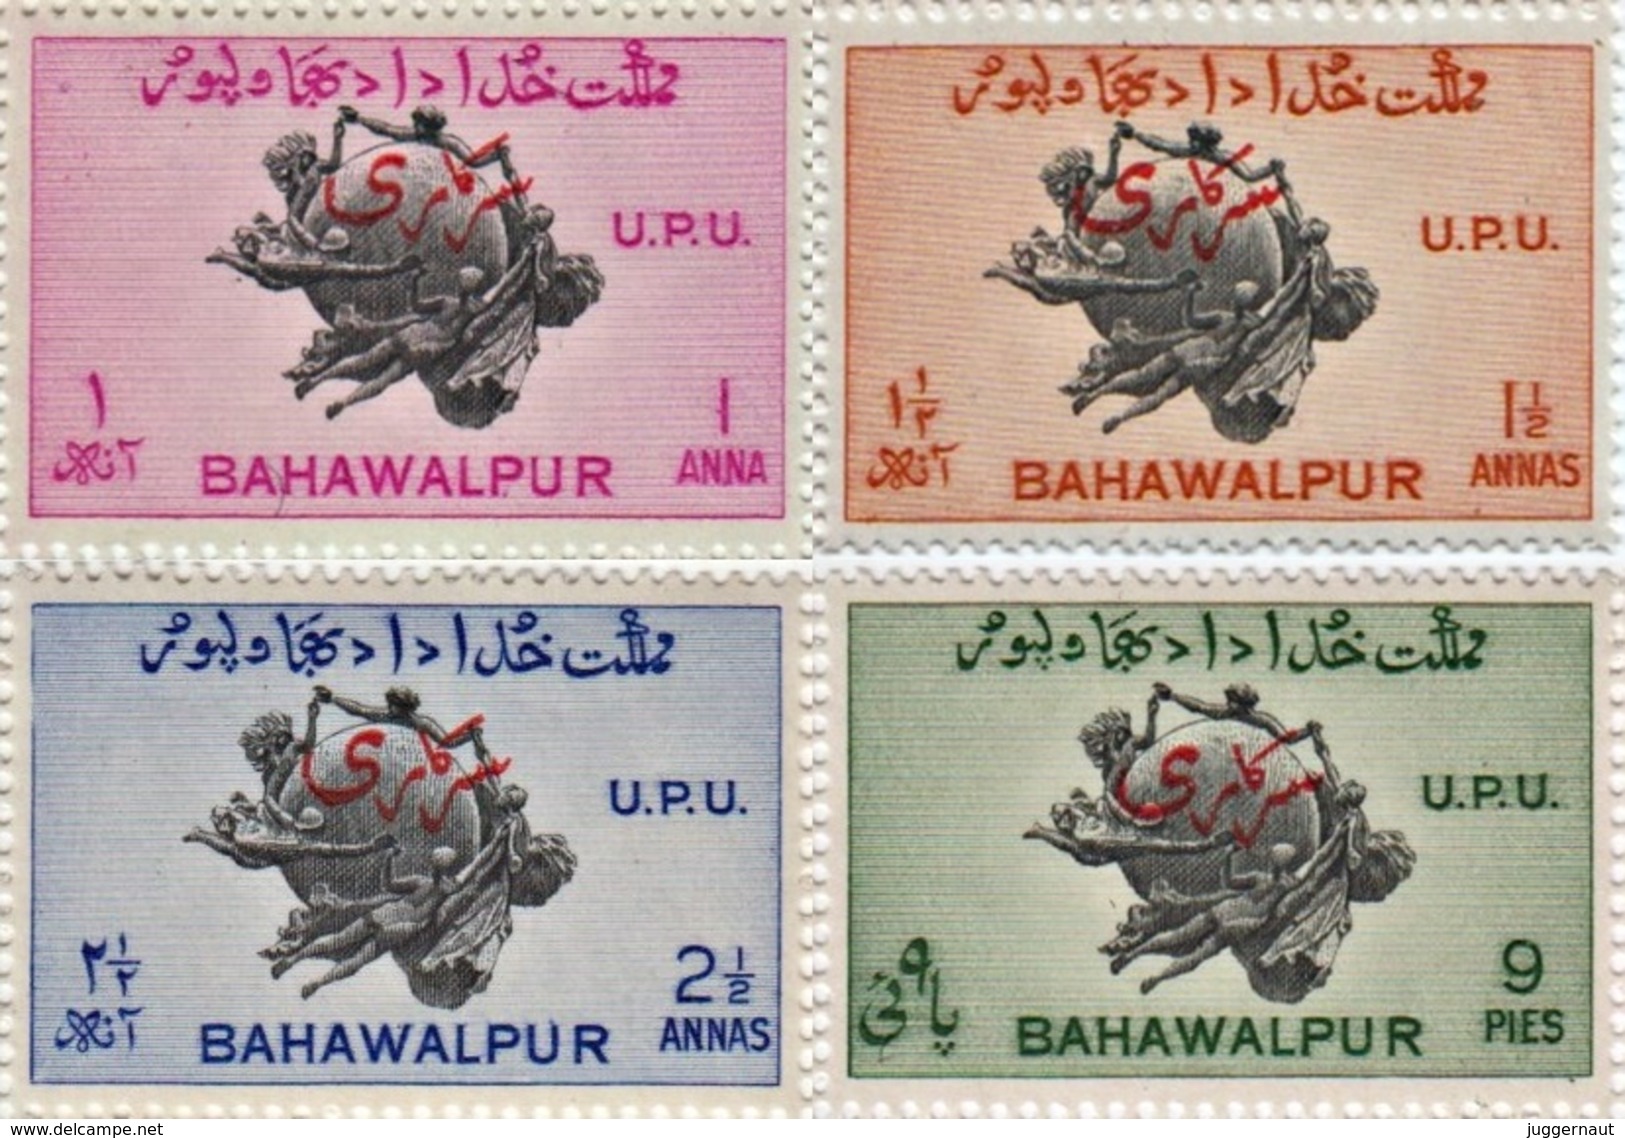 PAKISTAN BAHAWALPUR UPU 75th ANNIVERSARY SERIES 4-STAMP OVERPRINT SET 1949 MINT/MNH - Bahawalpur